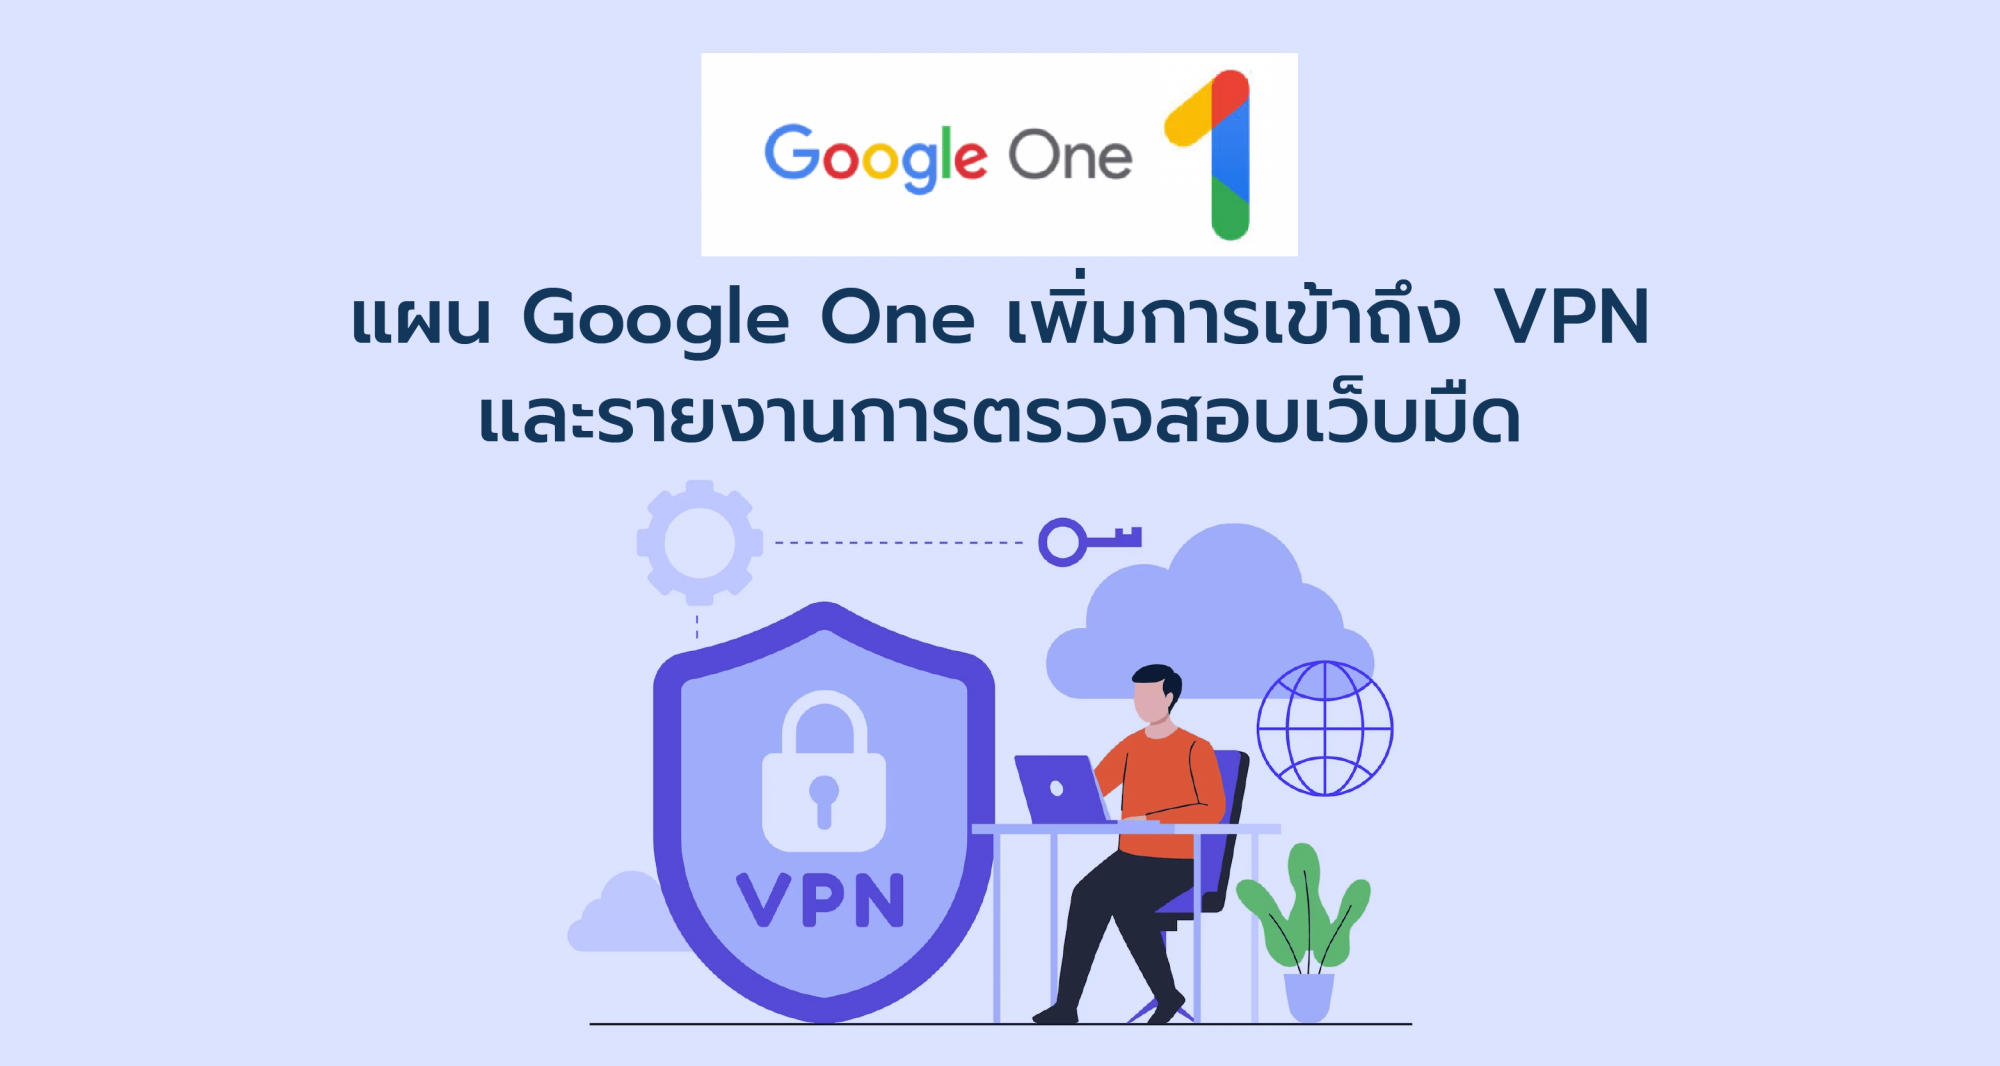 แผน Google One เพิ่มการเข้าถึง VPN และรายงานการตรวจสอบเว็บมืด